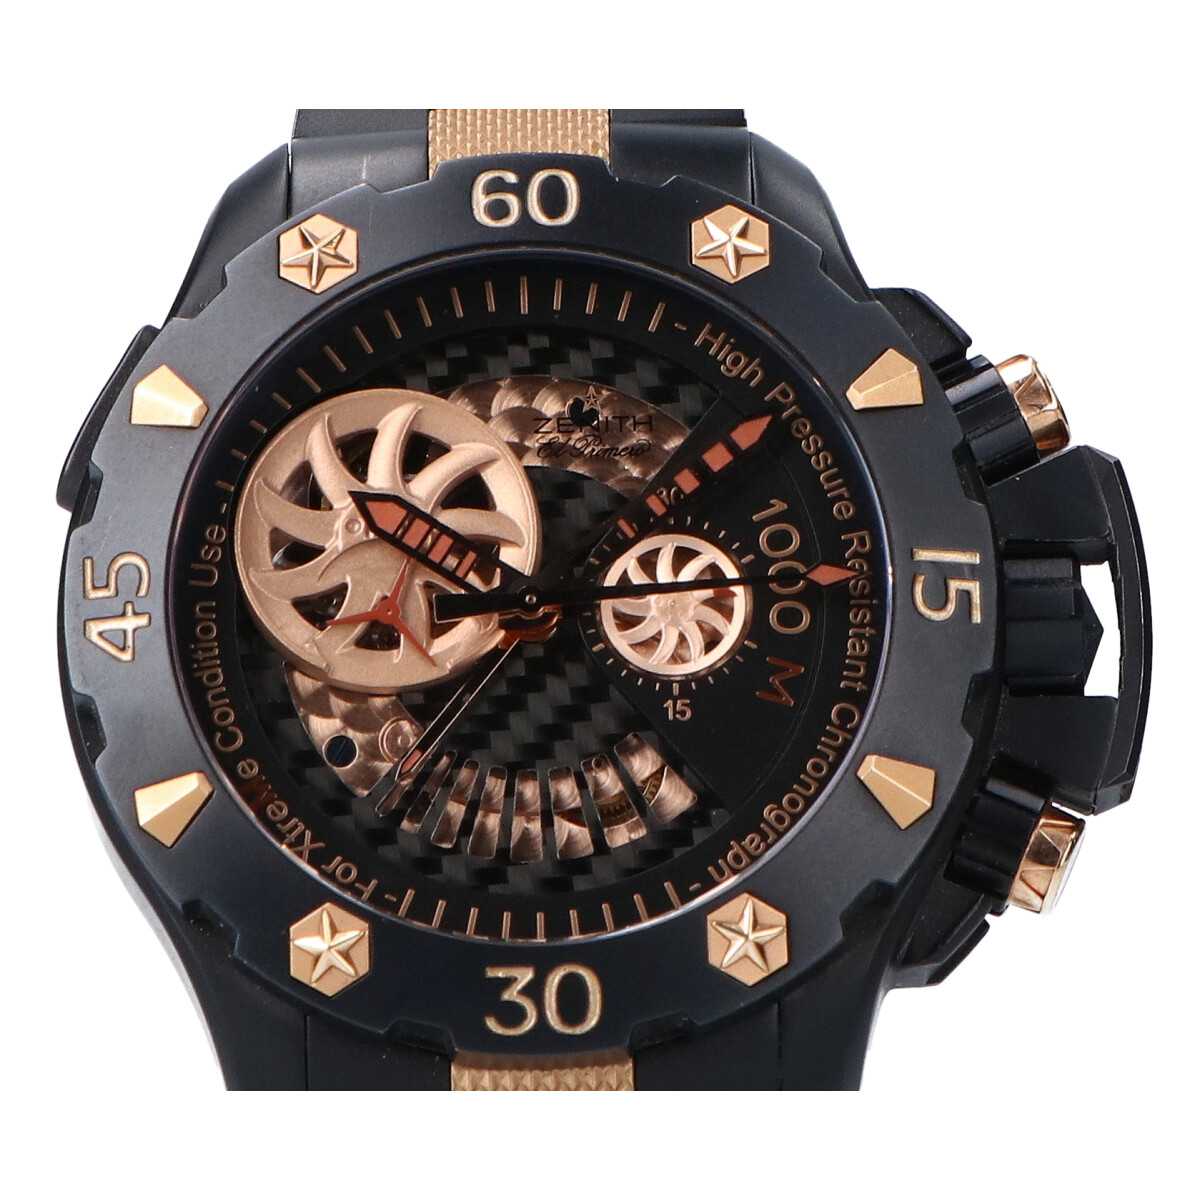 ゼニスの96.0528.4021 デファイ エル・プリメロ エクストリームオープンクロノグラフ自動巻き腕時計の買取実績です。